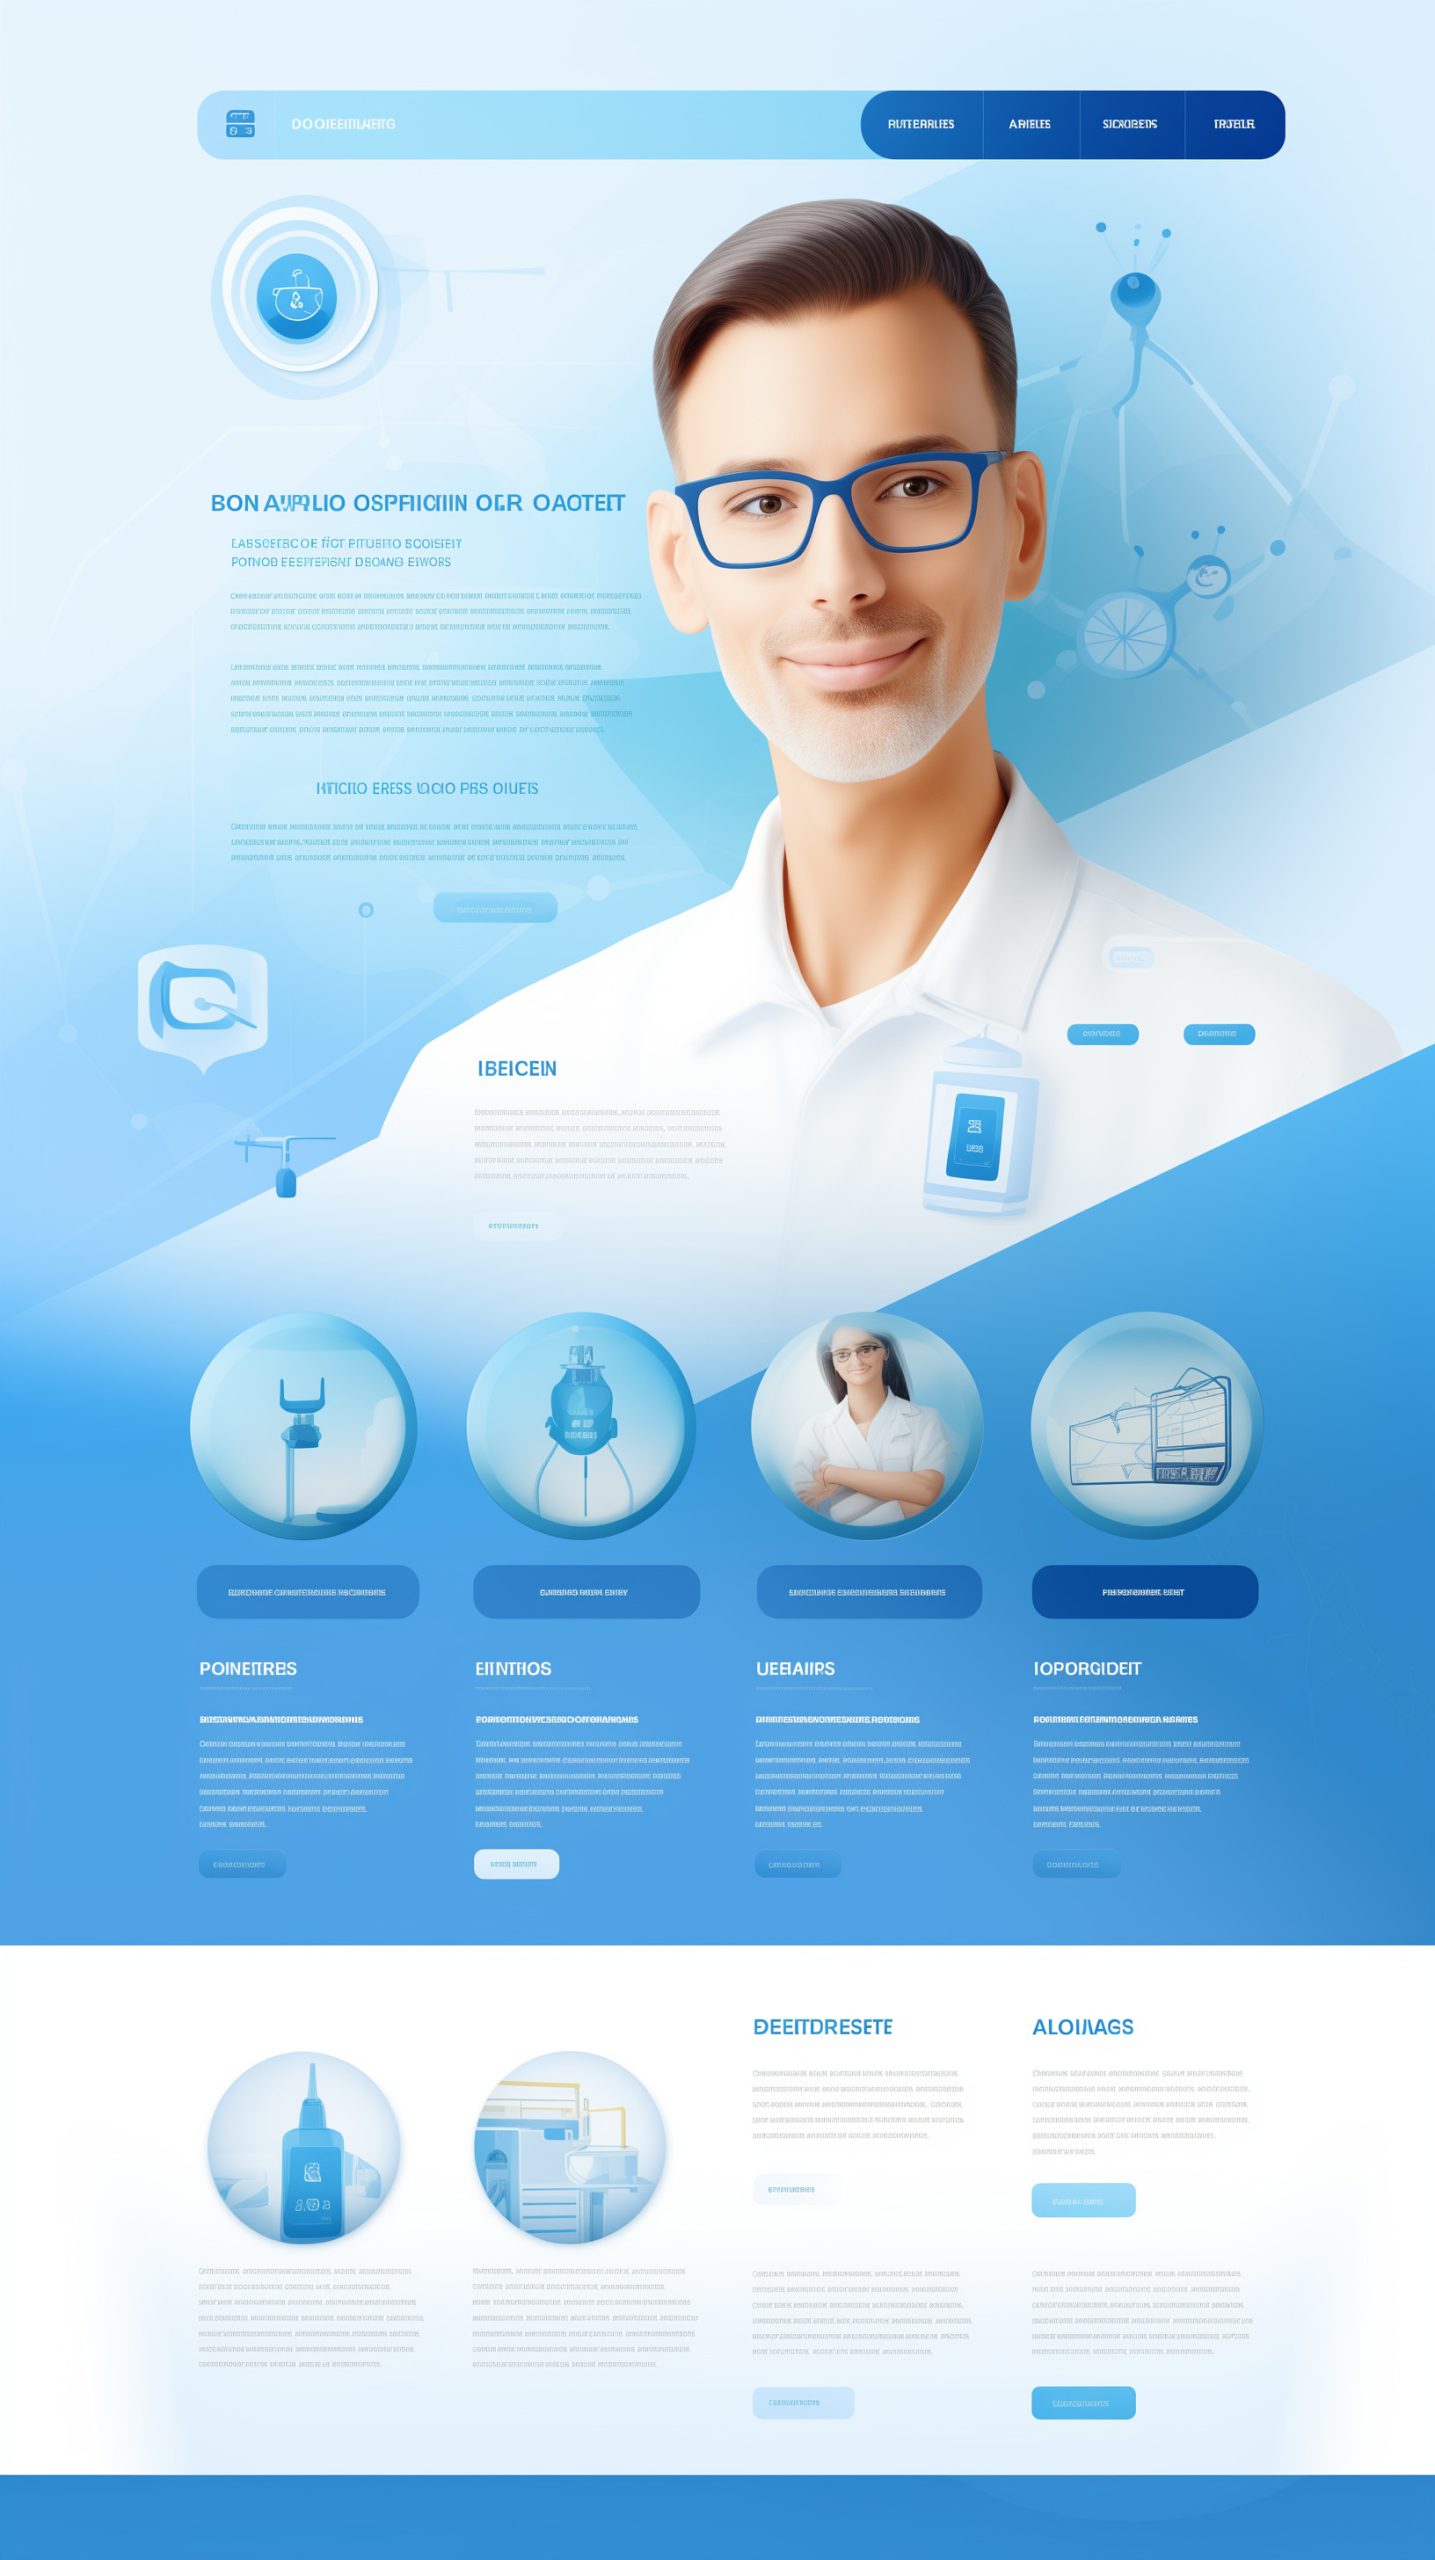 Designing Health: Inspiring Concepts for Doctor Websites